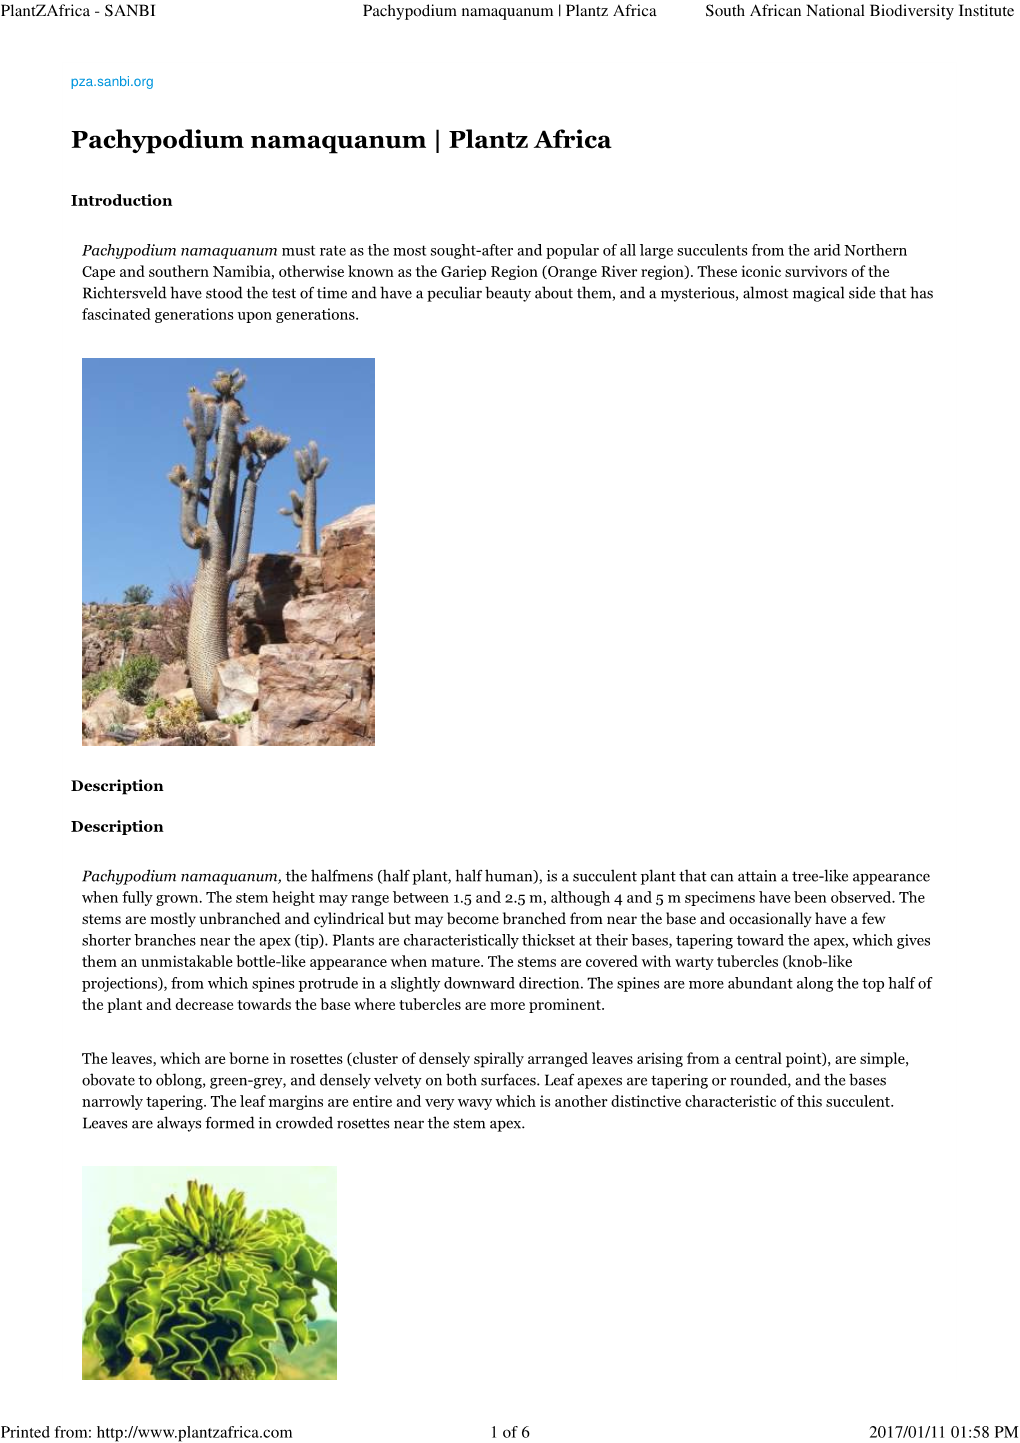 Pachypodium Namaquanum | Plantz Africa South African National Biodiversity Institute